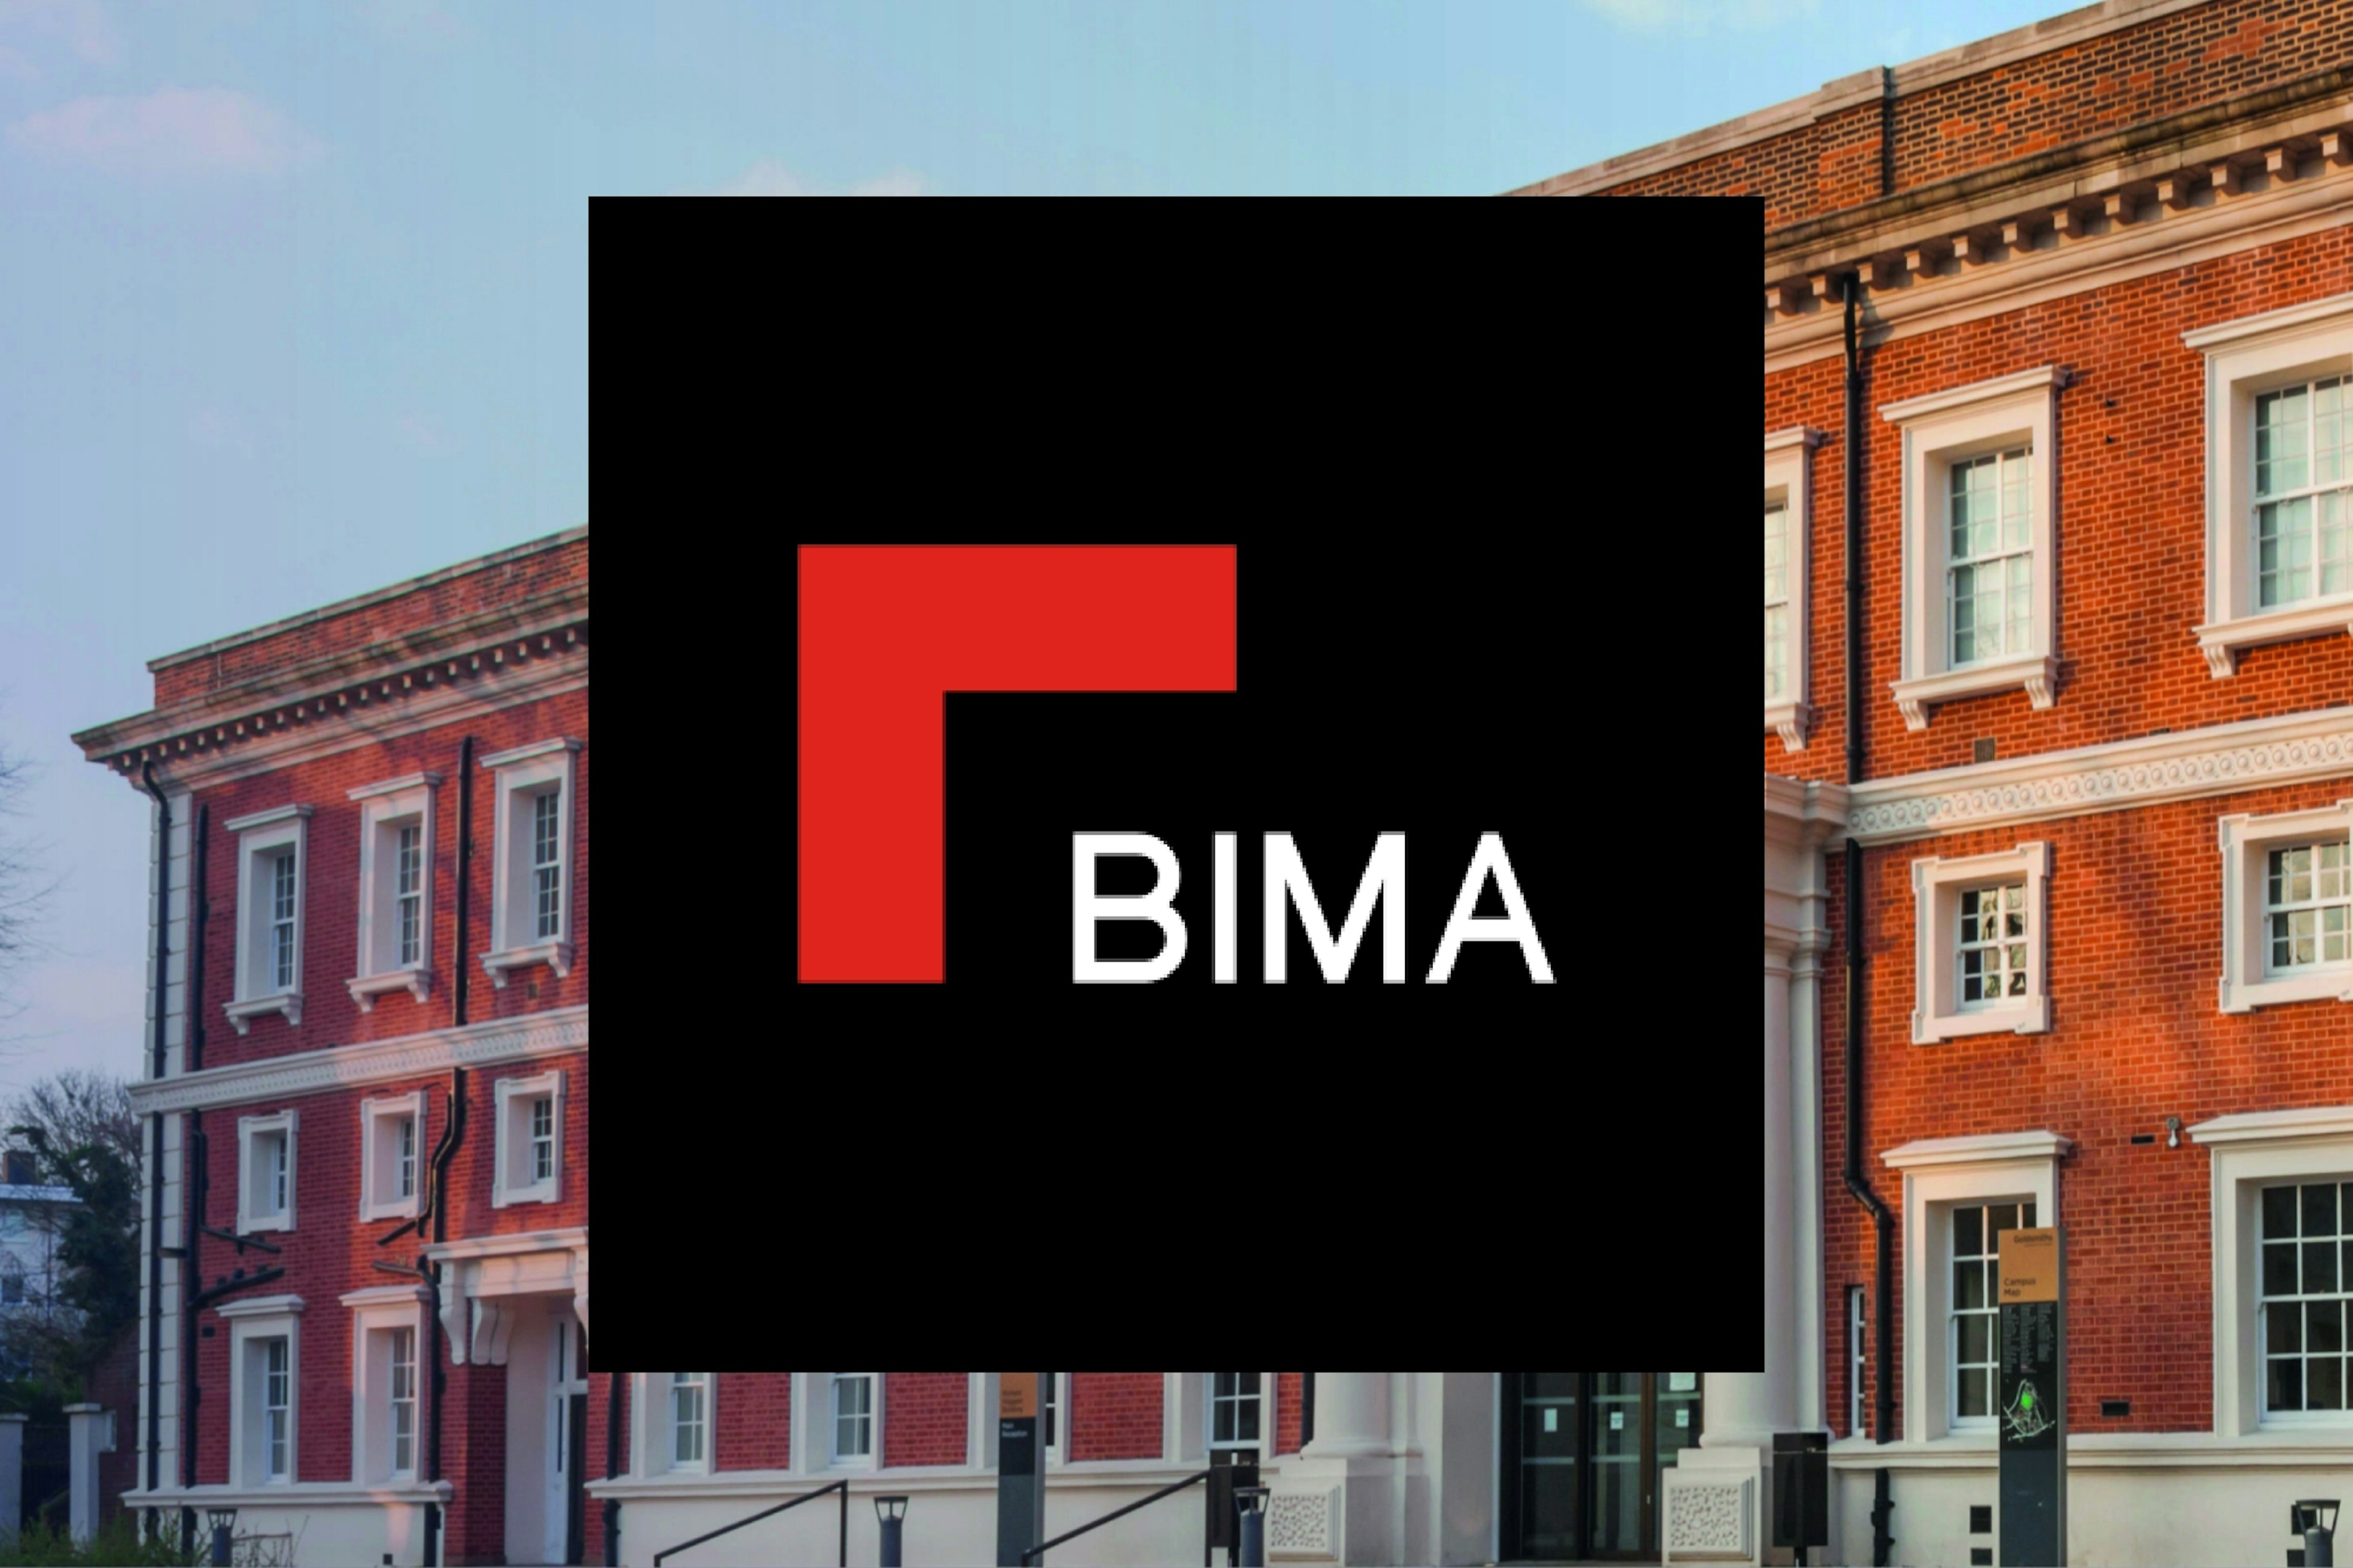 BIMA logo